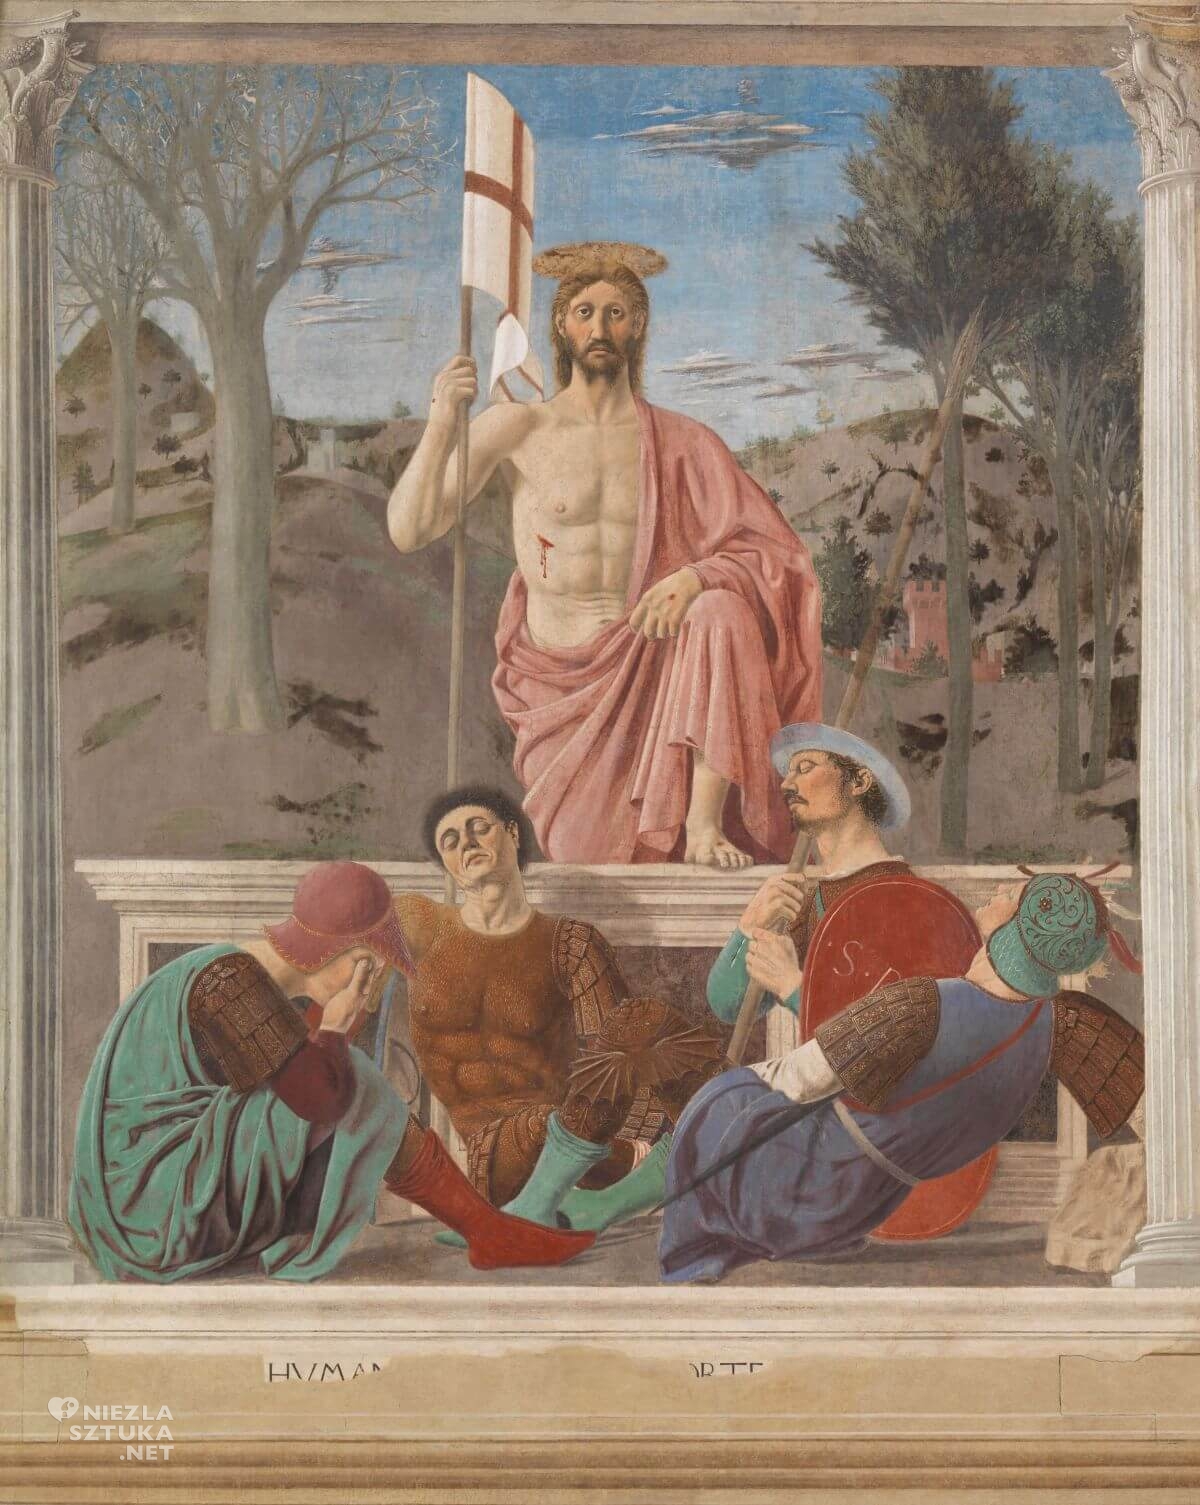 Piero della Francesca, Zmartwychwstanie, sztuka włoska, malarstwo włoskie, renesans, Niezła sztuka